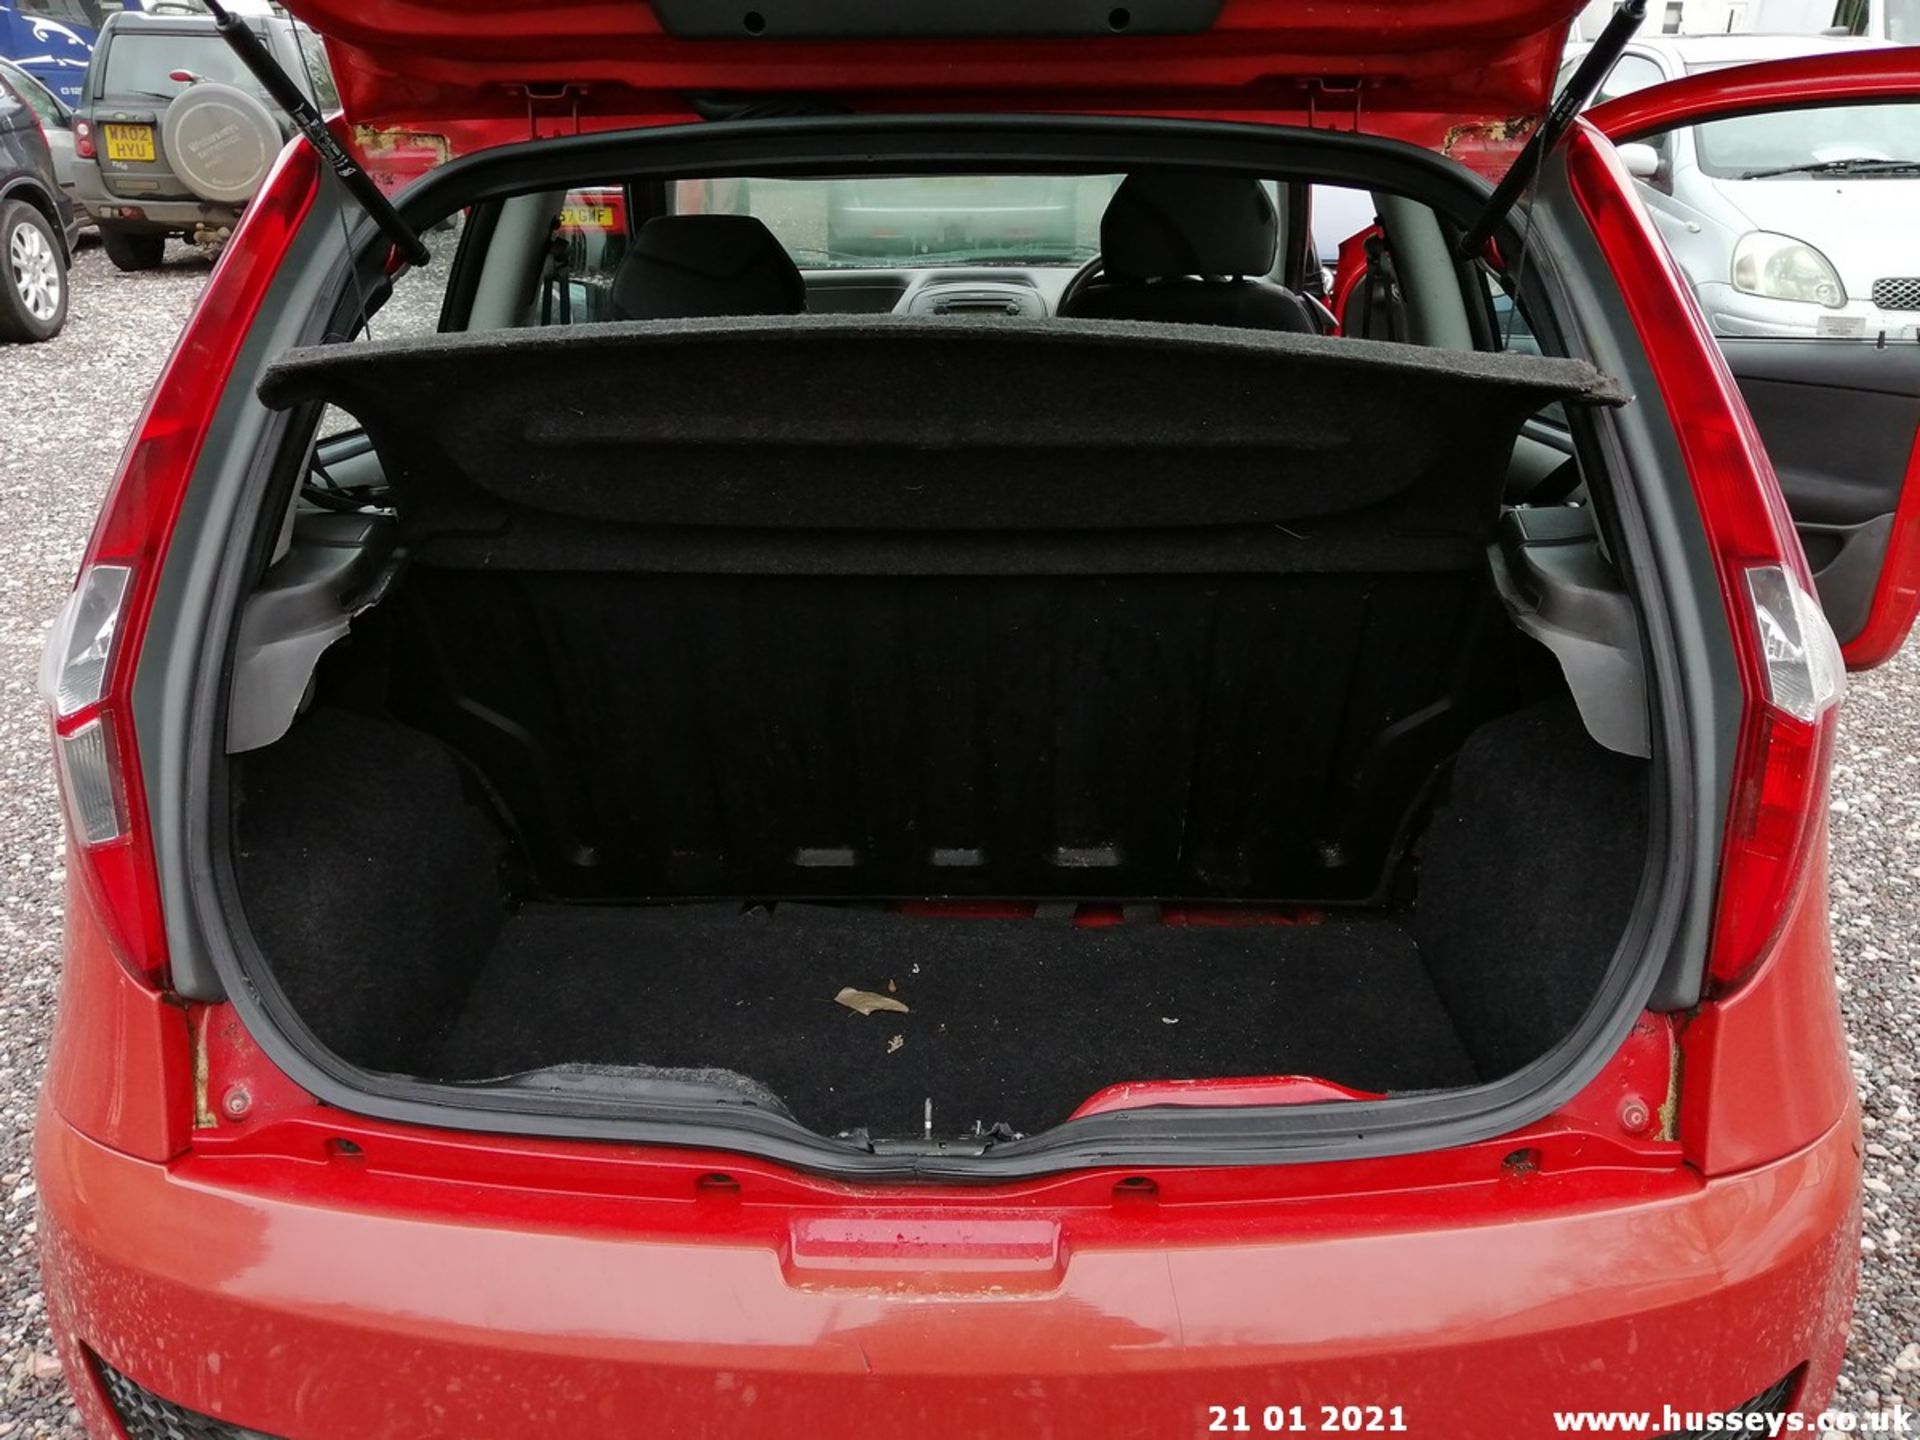 04/54 FIAT PUNTO ACTIVE SPORT 8V - 1242cc 3dr Hatchback (Red, 103k) - Image 12 of 12